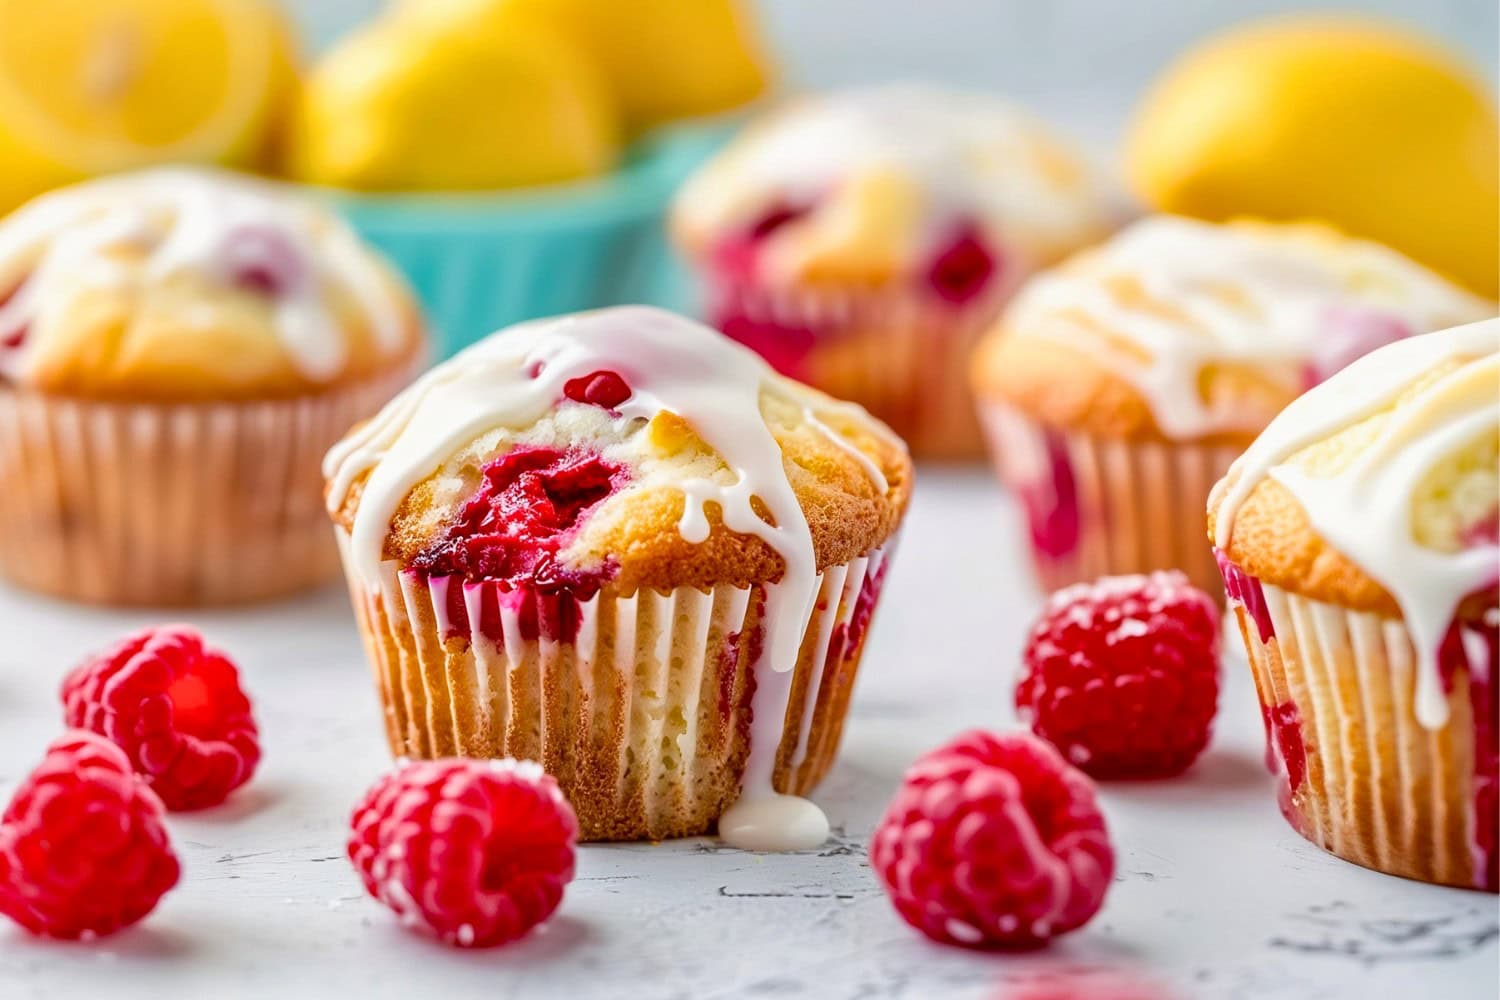 Lemon Raspberry Muffins with Glaze